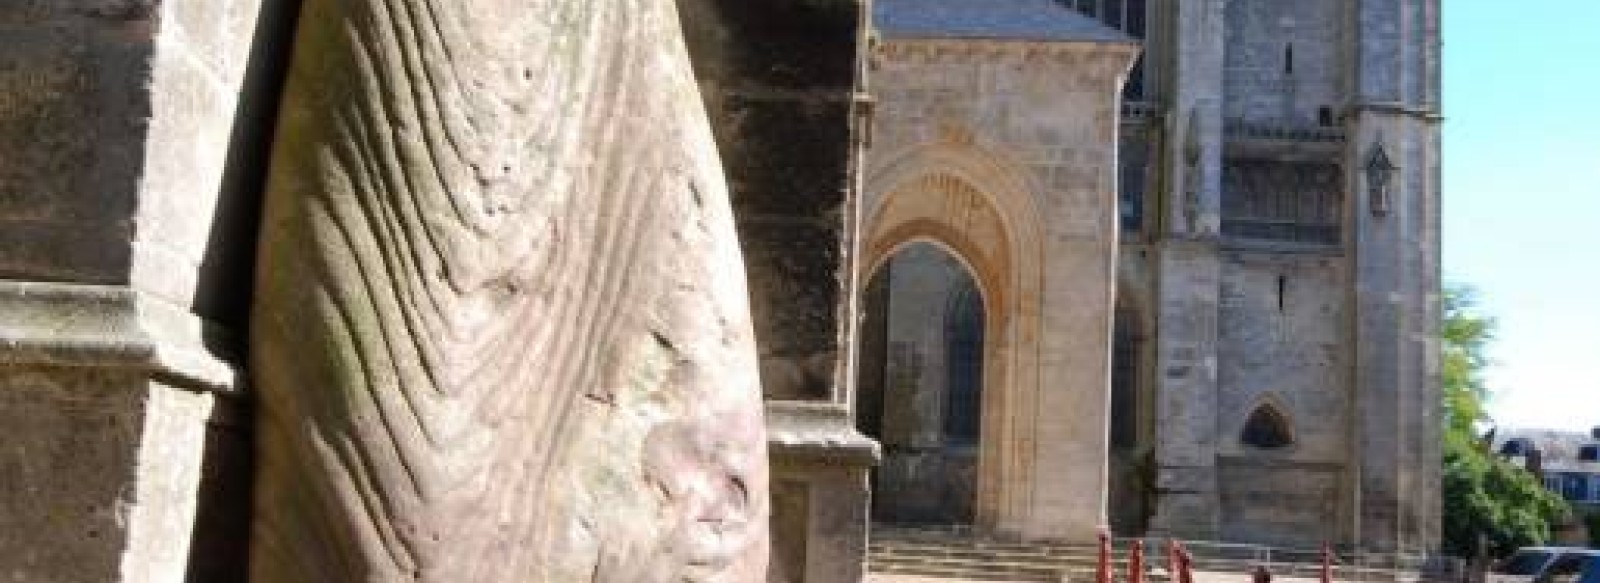 Le Menhir de la Cathedrale du Mans